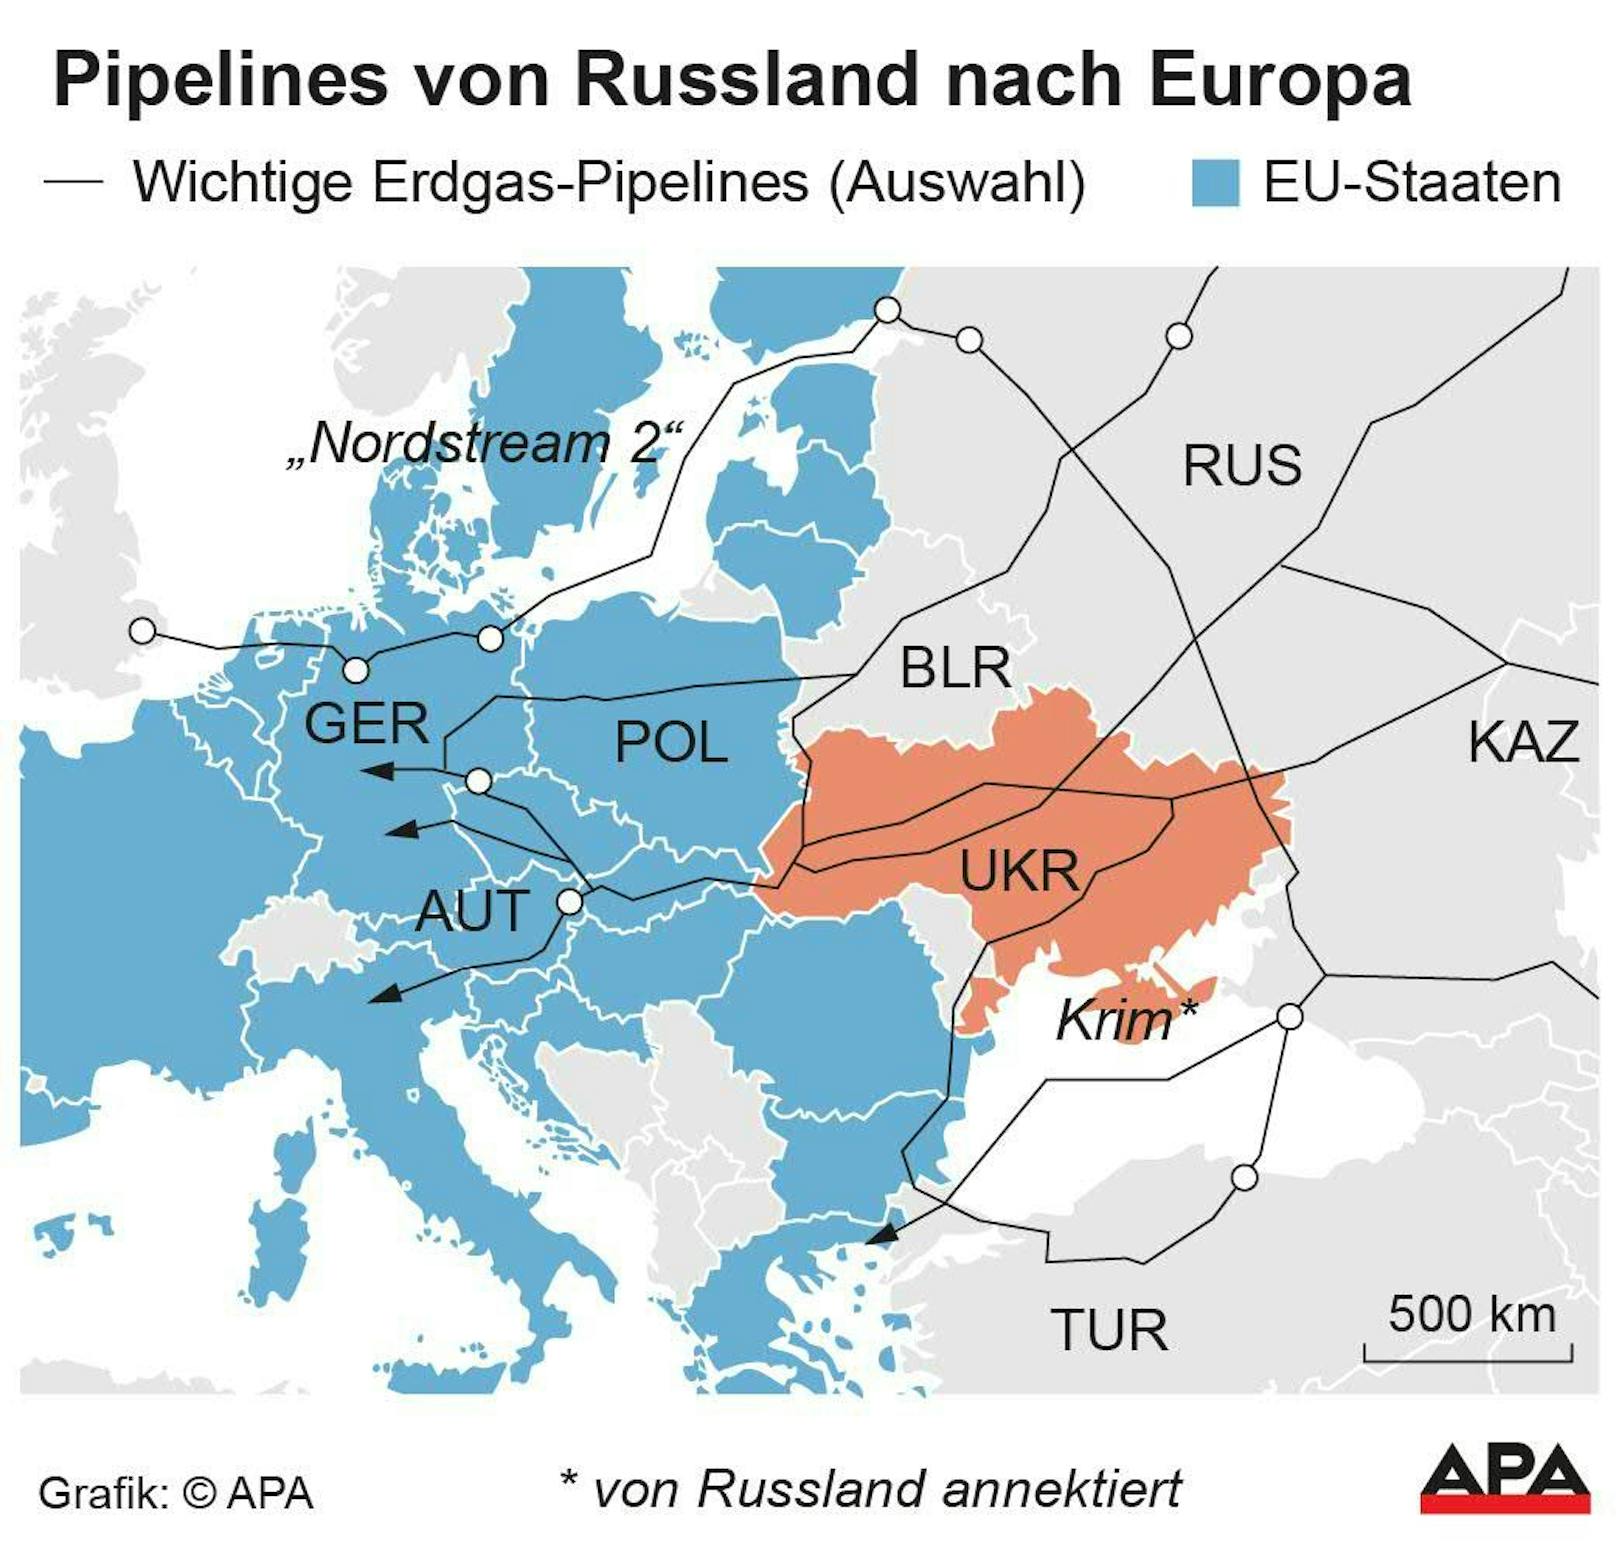 Wichtige Erdgas-Pipelines